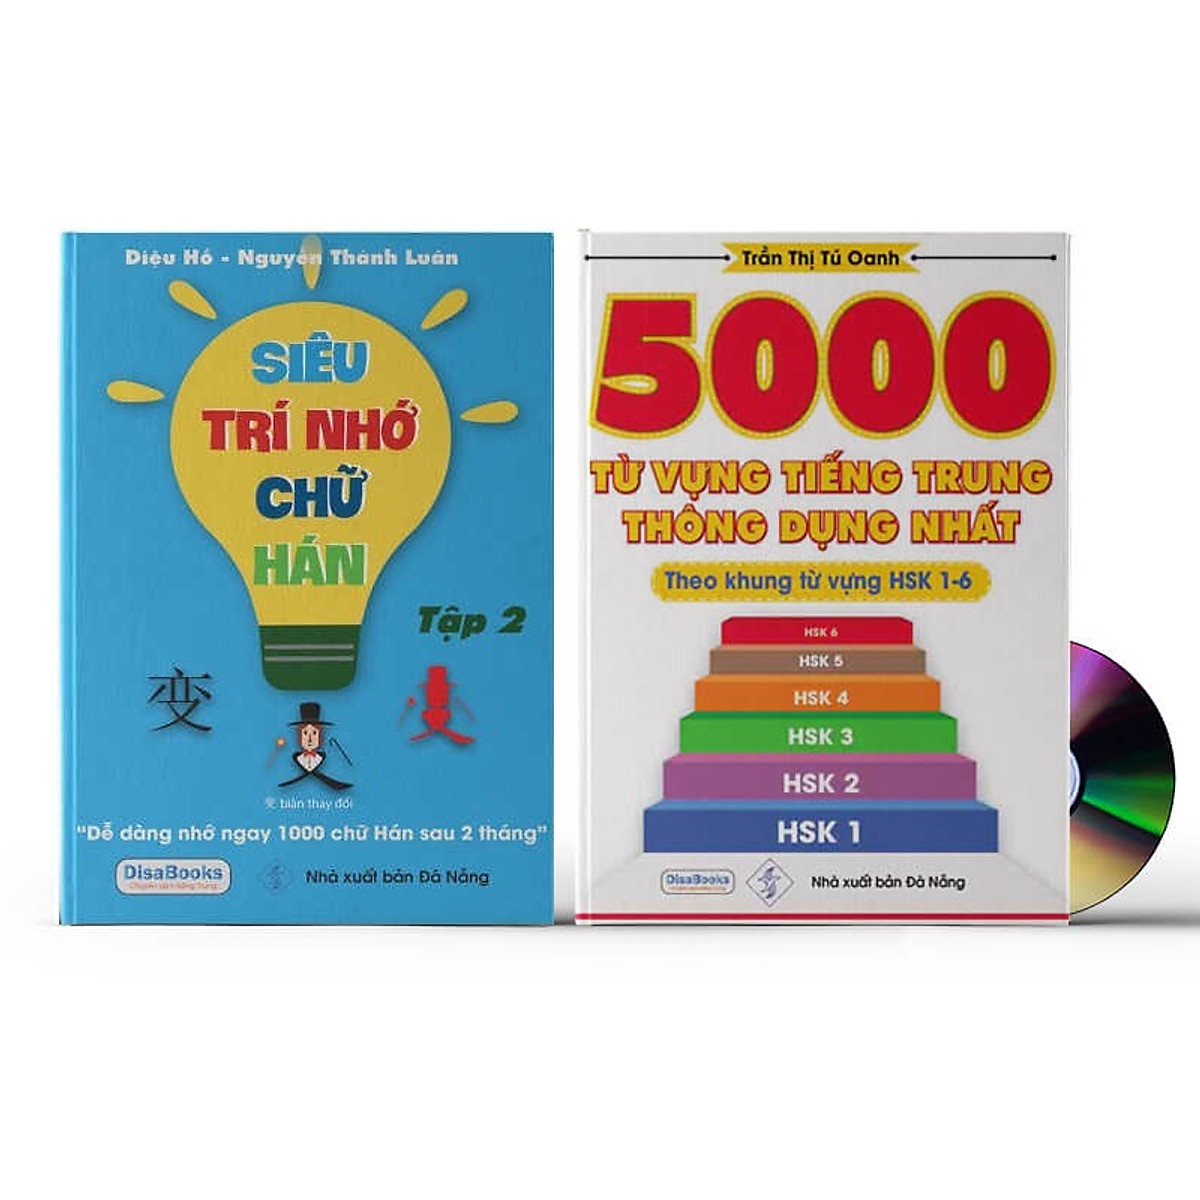 Sách- Combo 2 sách 5000 từ vựng tiếng Trung thông dụng nhất theo khung HSK từ HSK1 đến HSK6+ Siêu trí nhớ chữ hán Tập 2 (nhớ nhanh 1000 chữ Hán trong 2 tháng)+DVD tài liệu